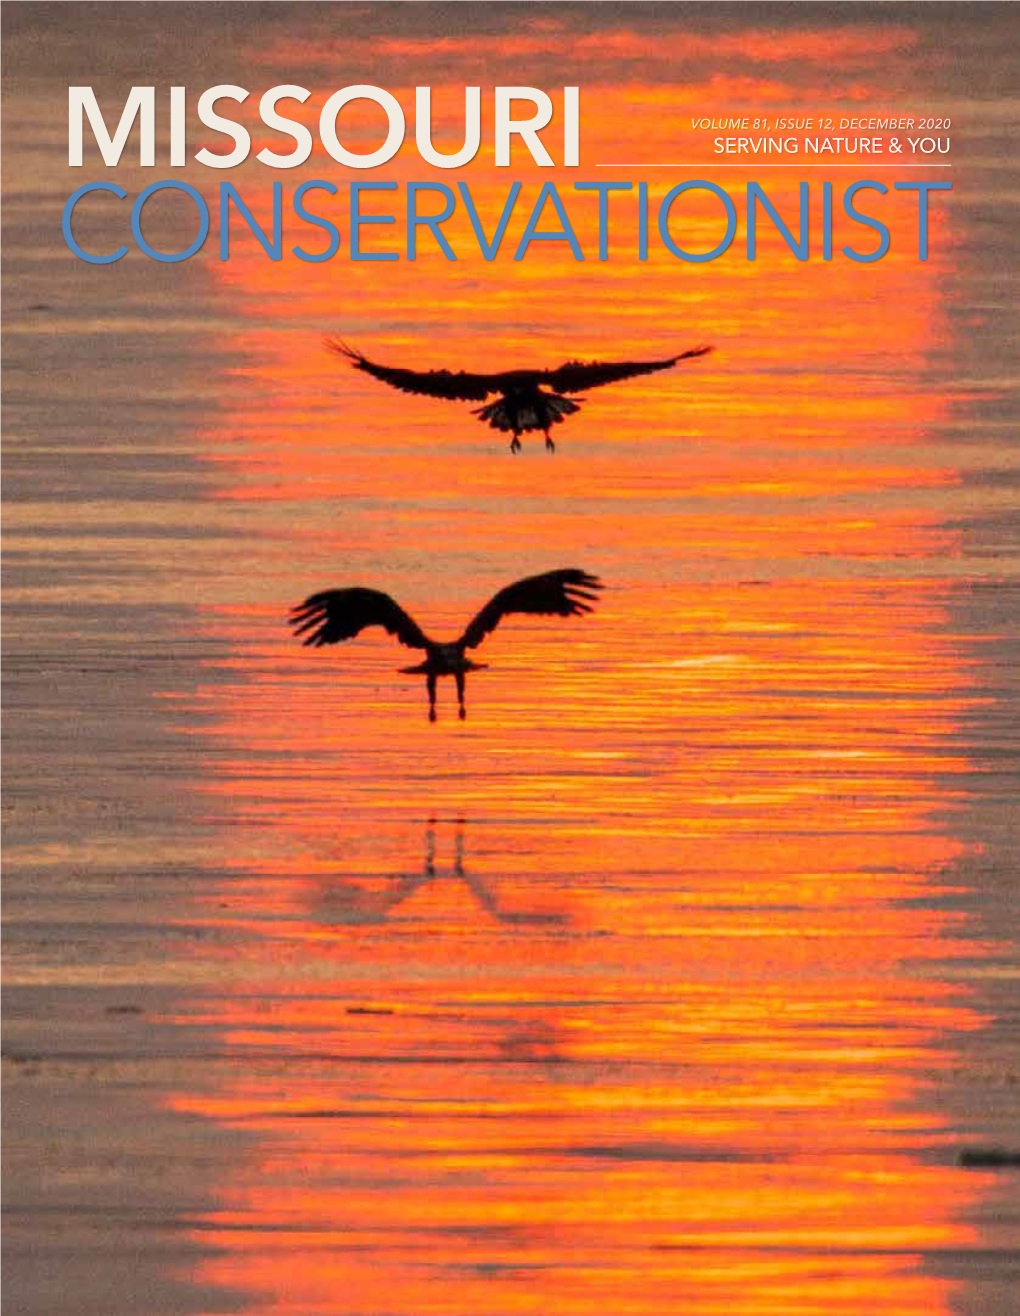 Missouri Conservationist December 2020